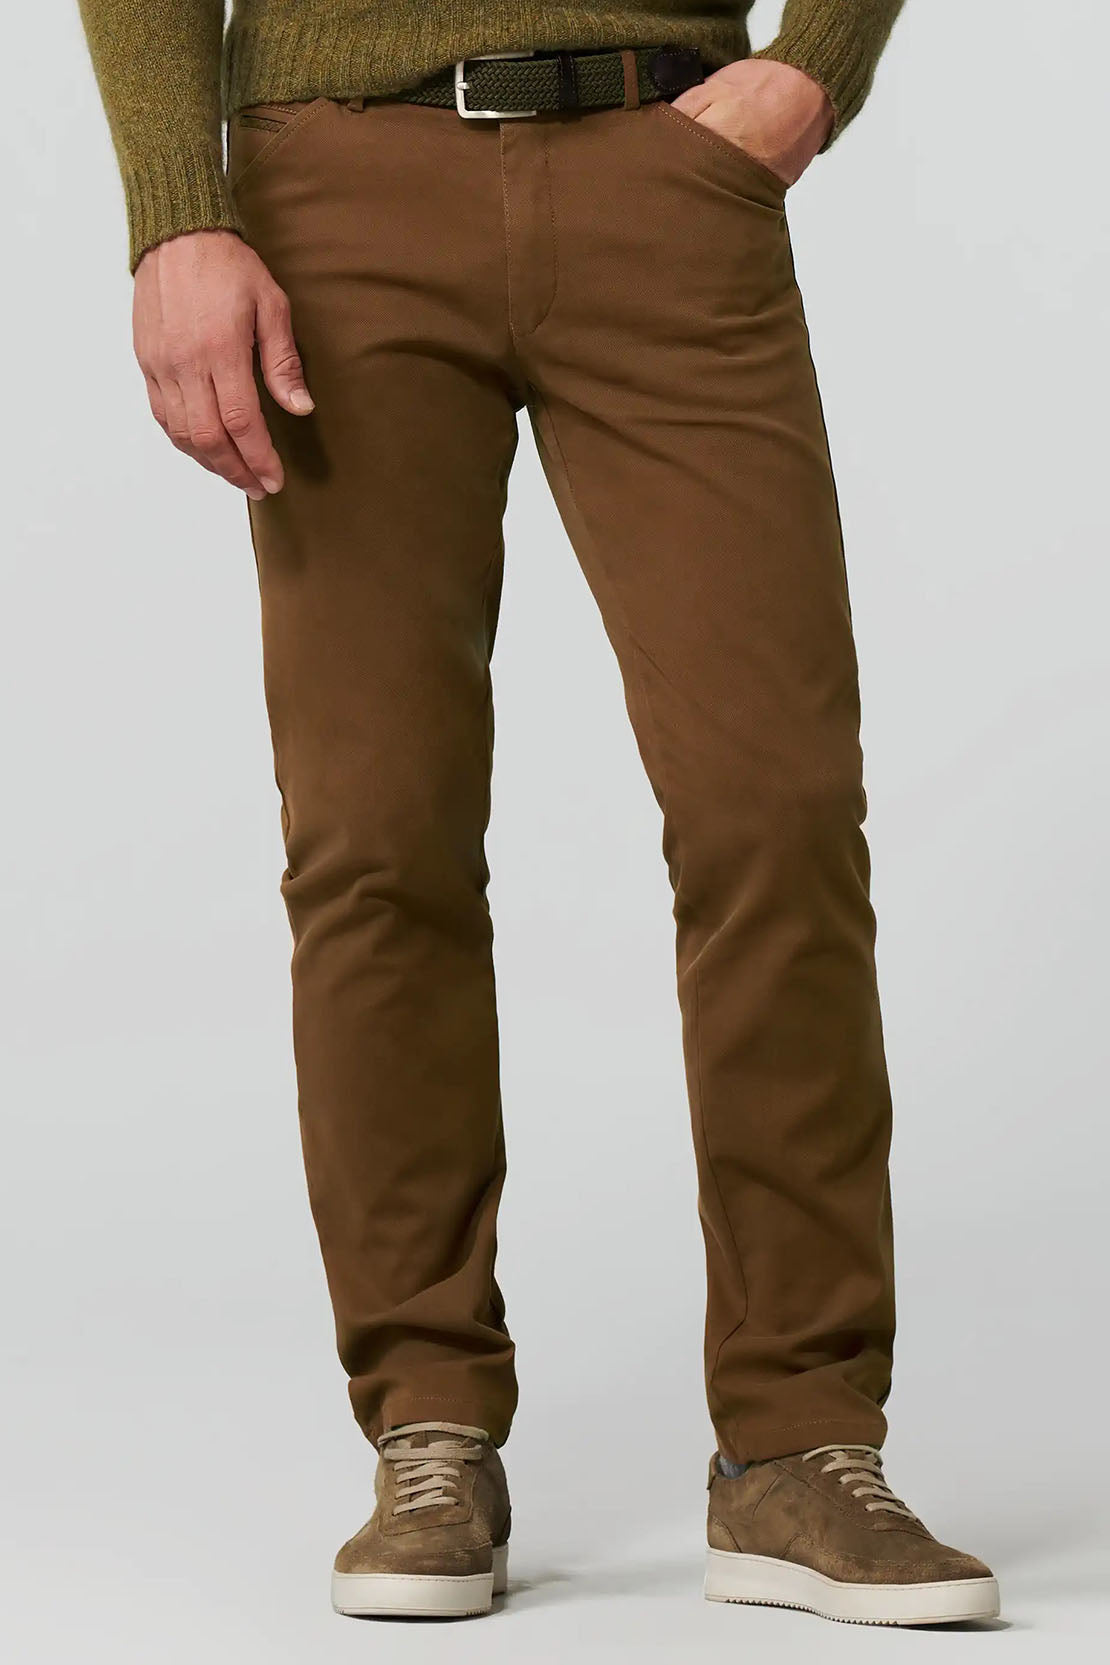 HILTL - PARKER - Regular Fit Soft Stretch Cotton Jeans in Brown 72481/60900 33